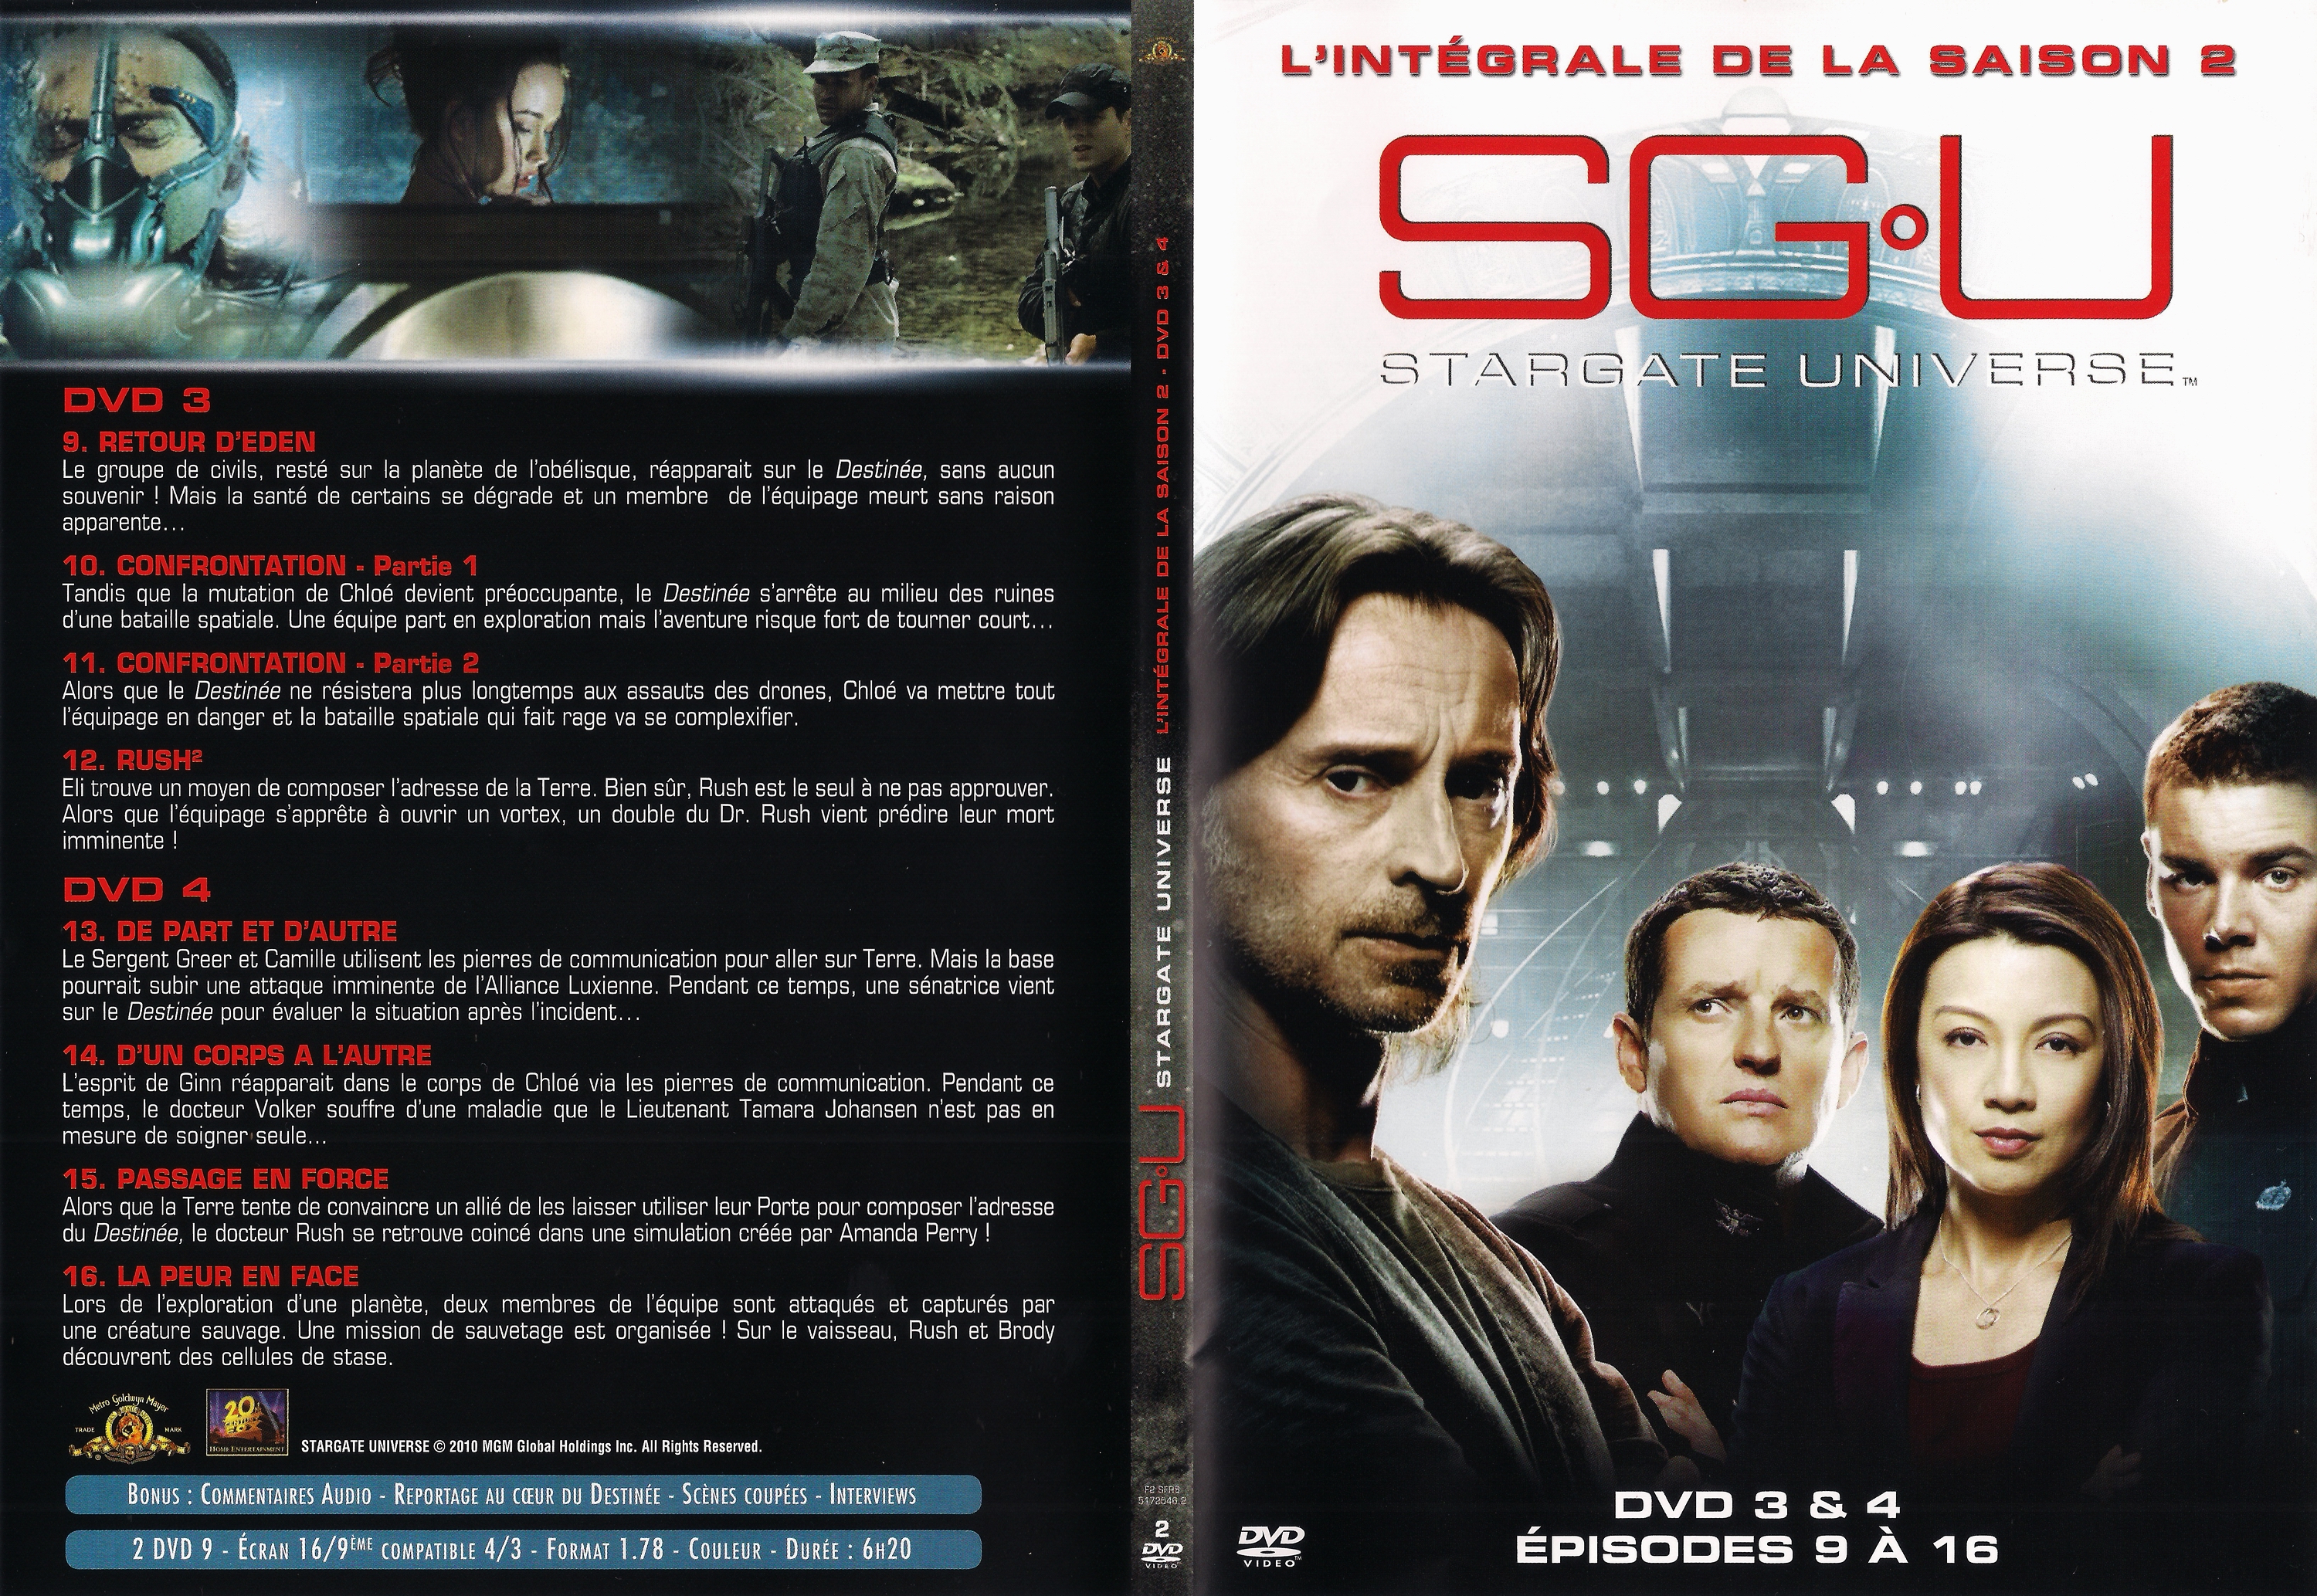 Jaquette DVD Stargate Universe saison 2 DVD 2